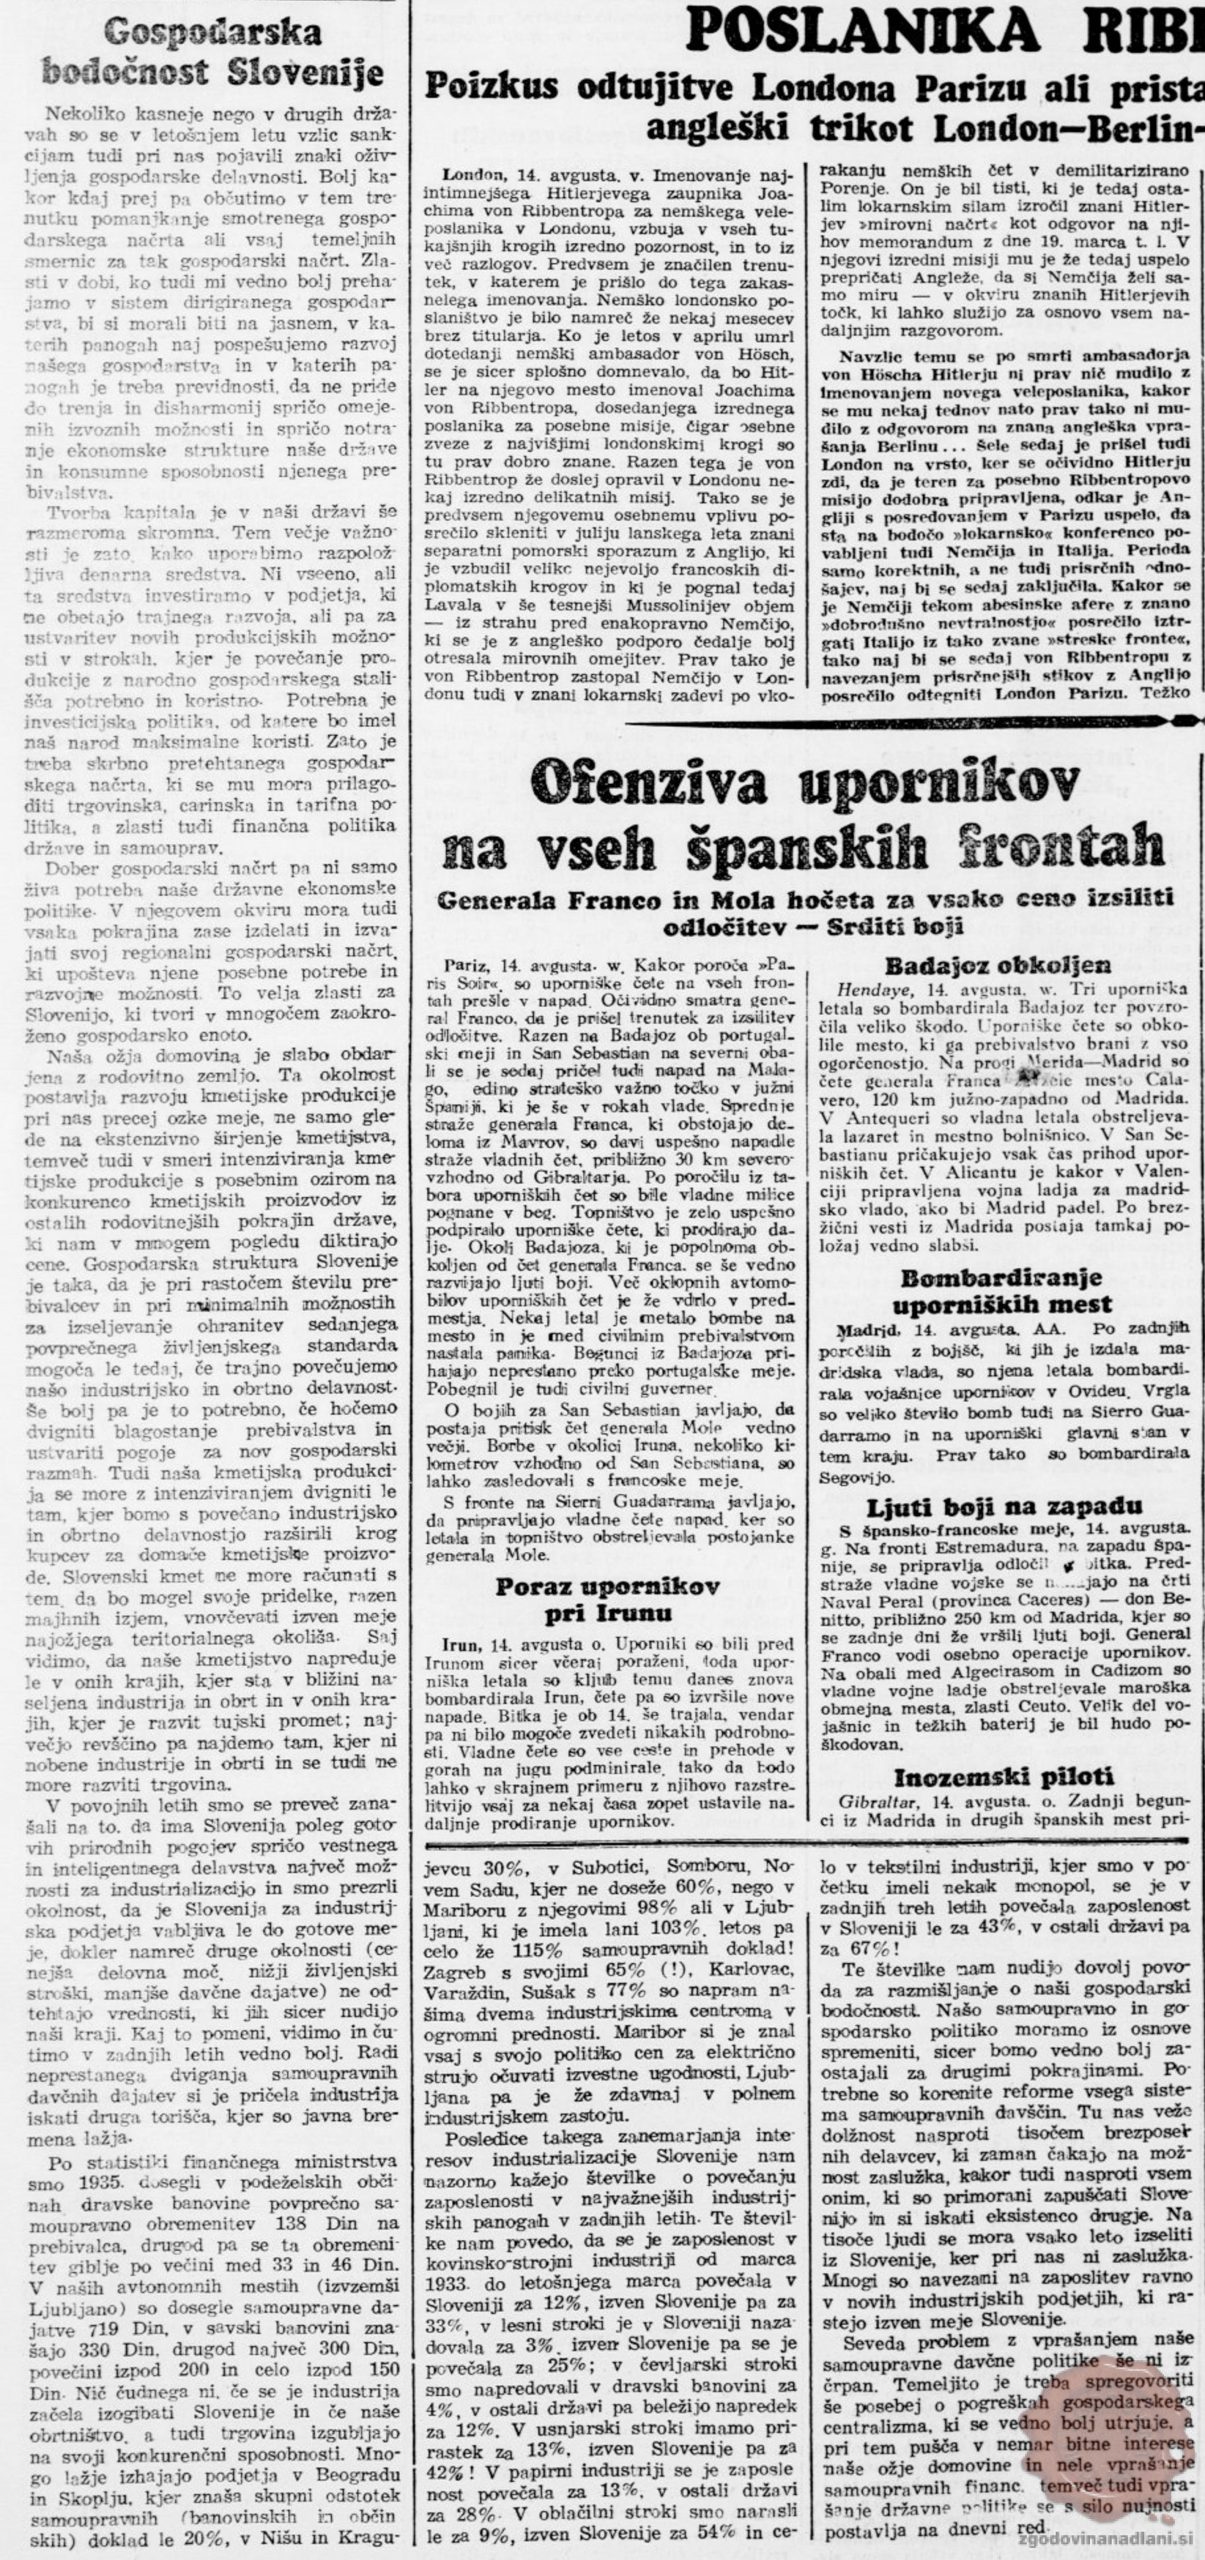 Gospodarska bodočnost Slovenije, Jutro (15.08.1936), letnik 17, številka 188, str. 1